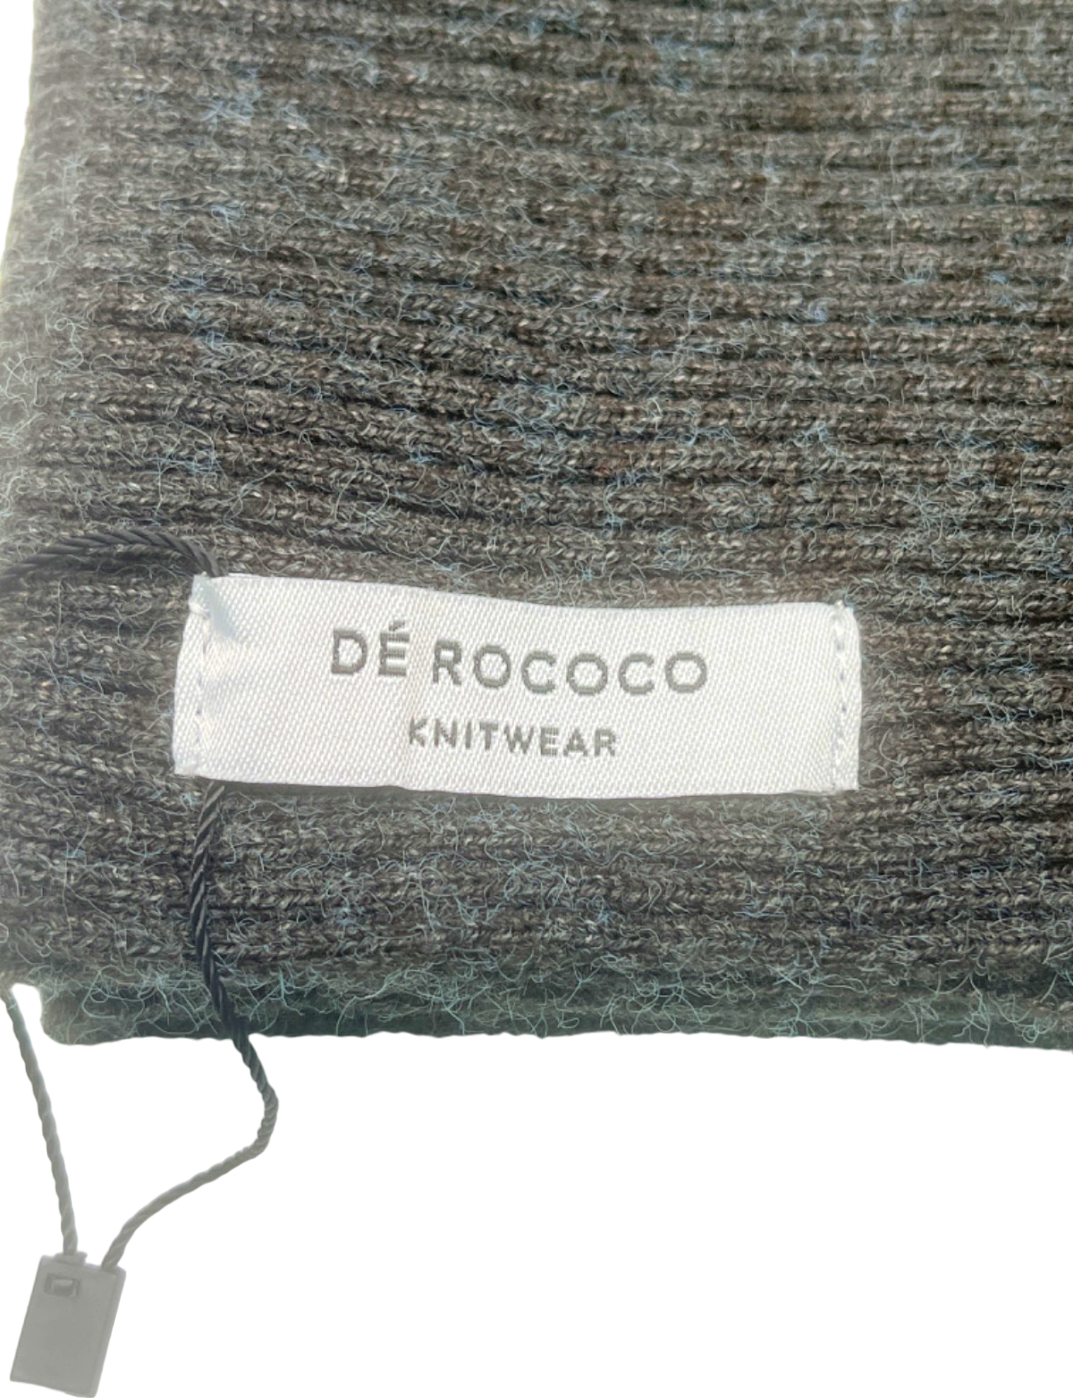 De Rococo Grey Knit Scarf